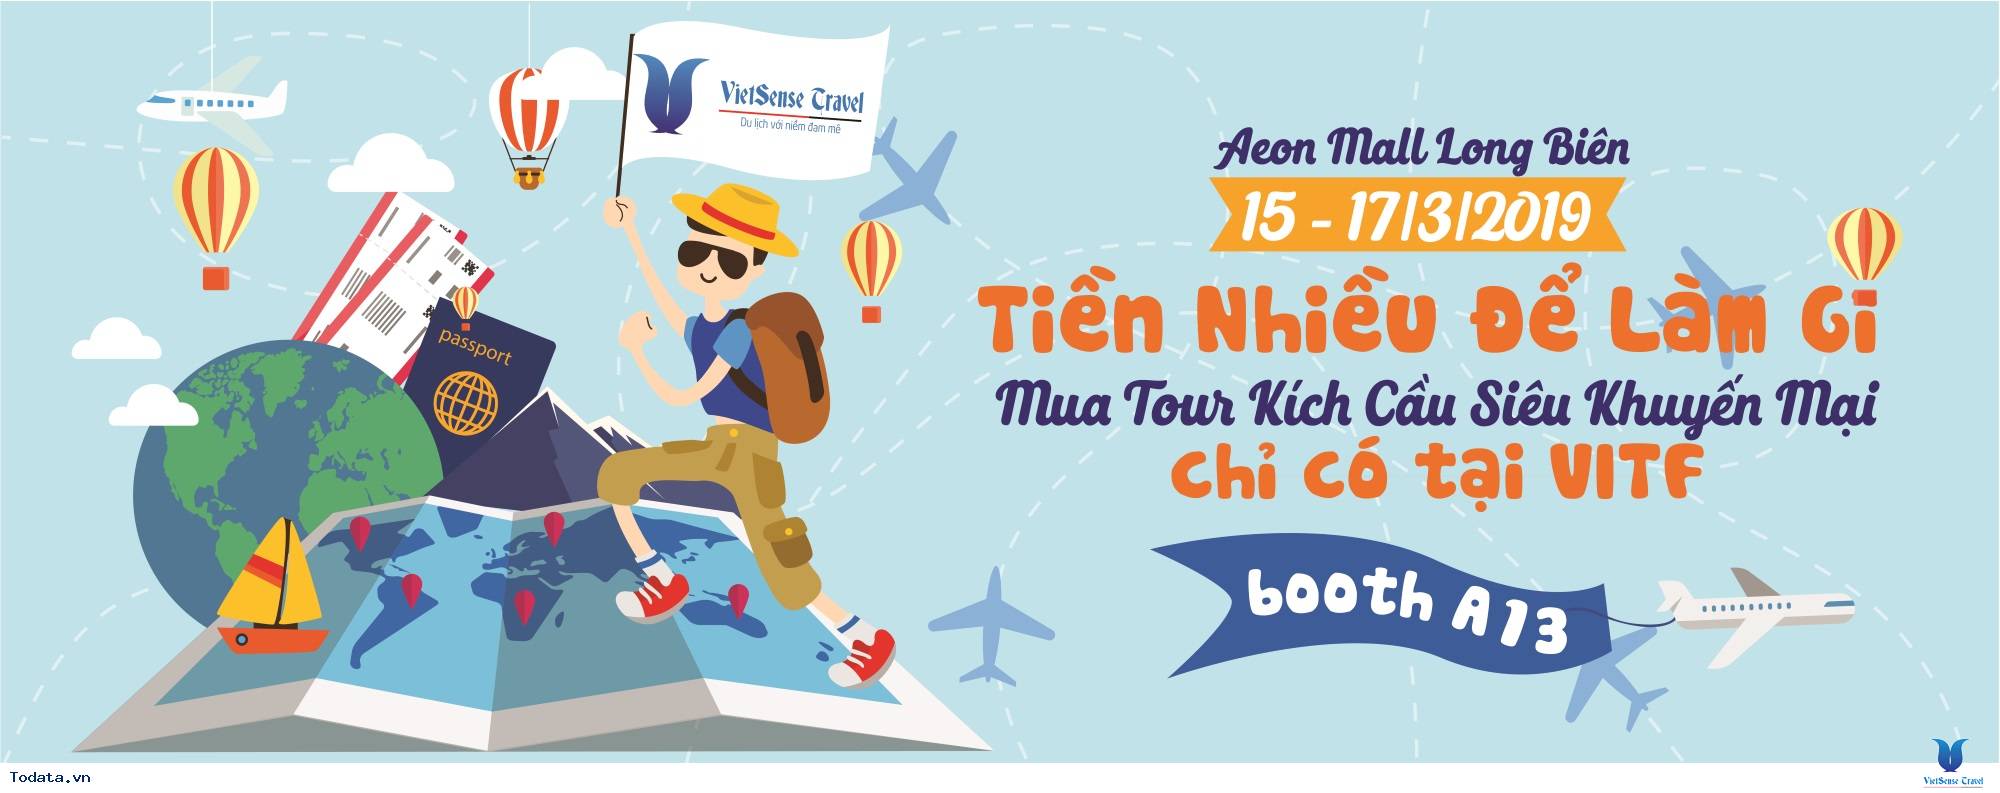 VietSense Travel Tưng Bừng Khuyến Mại Trong Lễ Hội Du Lịch Bán Lẻ Travel Fest